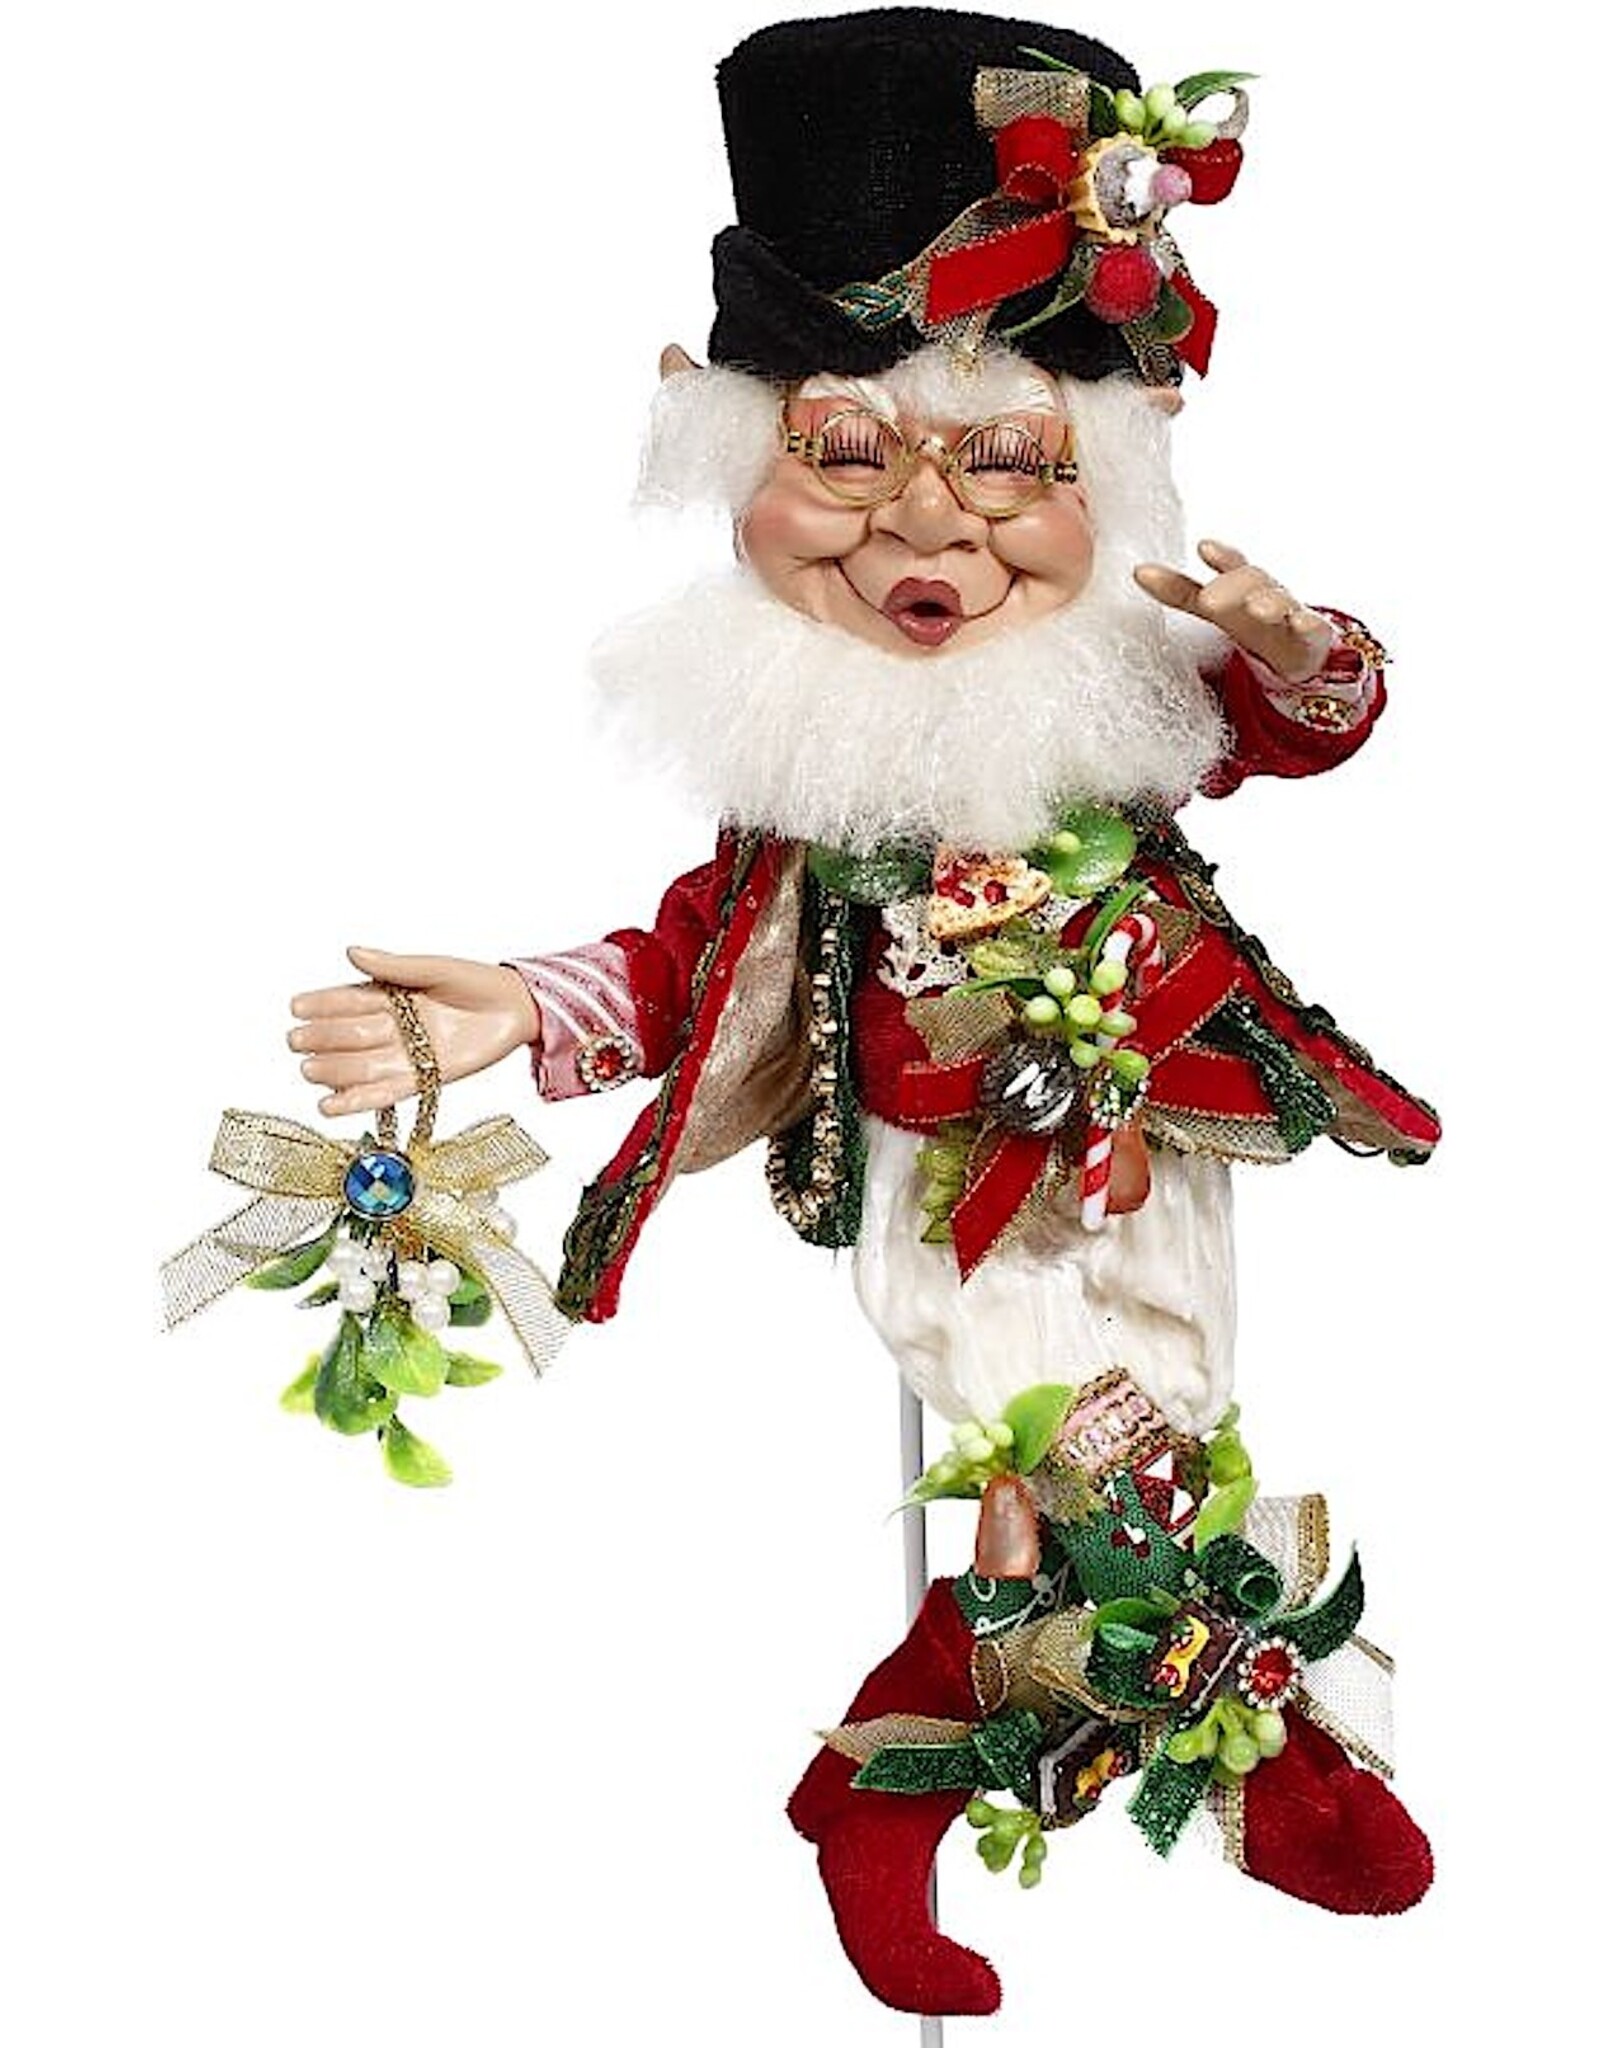 https://cdn.shoplightspeed.com/shops/633980/files/59281275/1600x2048x2/mark-roberts-fairies-christmas-elves-sweet-mistlet.jpg